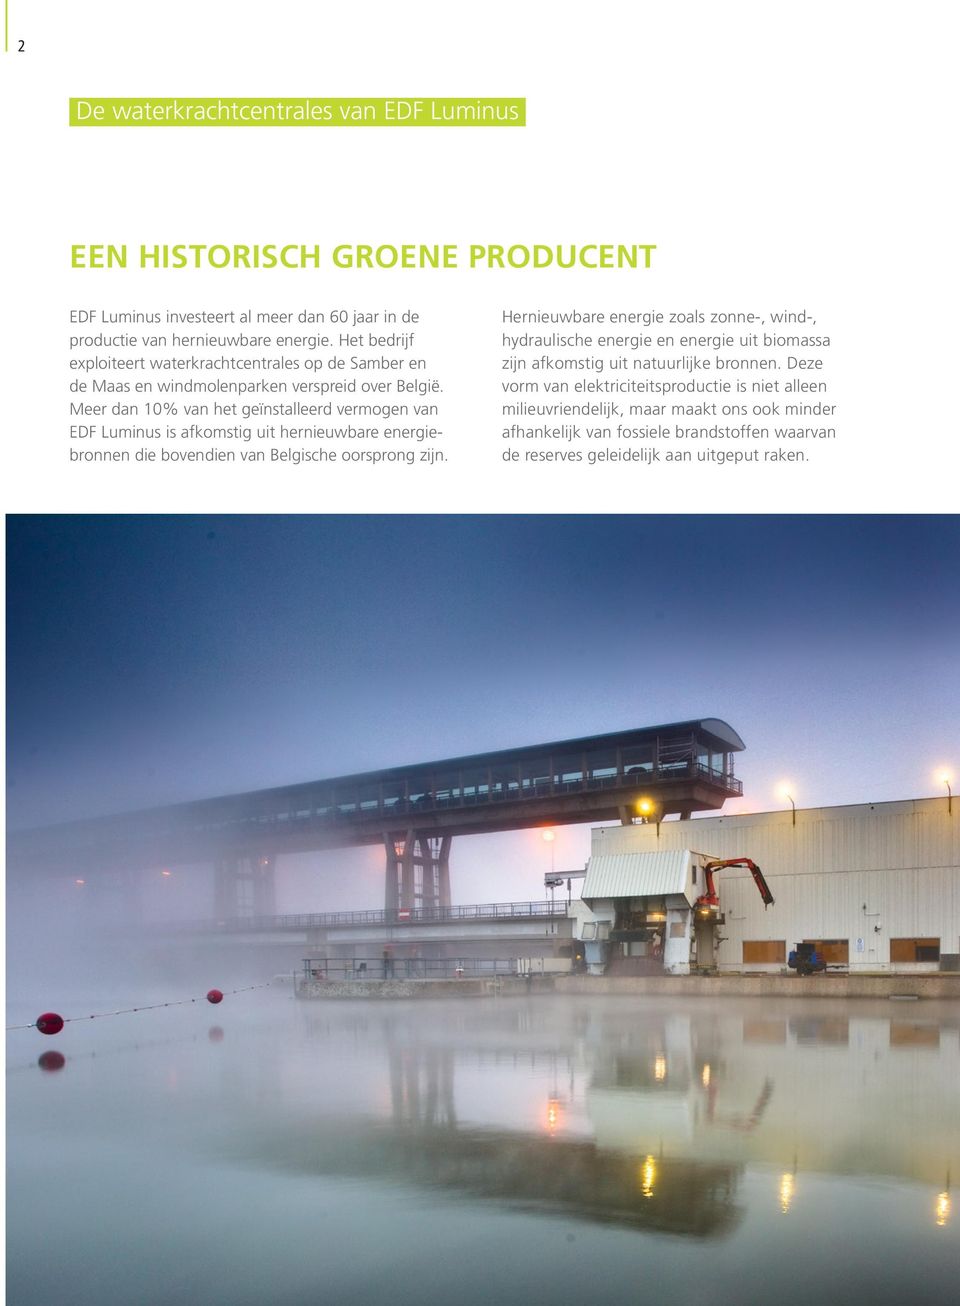 Meer dan 10% van het geïnstalleerd vermogen van EDF Luminus is afkomstig uit hernieuwbare energiebronnen die bovendien van Belgische oorsprong zijn.